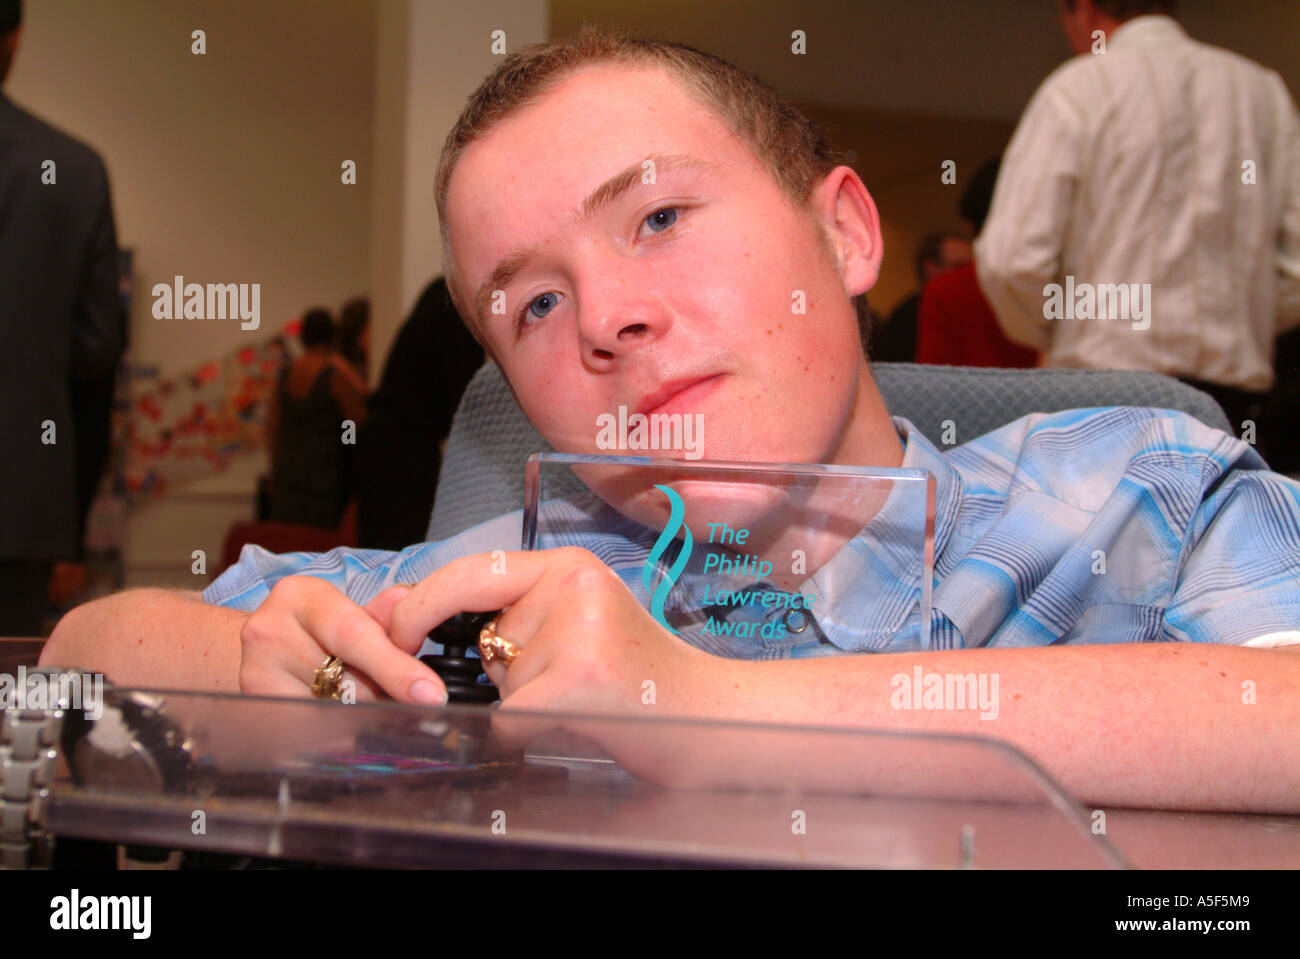 Junge behinderte junge im Rollstuhl, ein Empfänger von Philip Lawrence Awards 2005 London UK ist Stockfoto